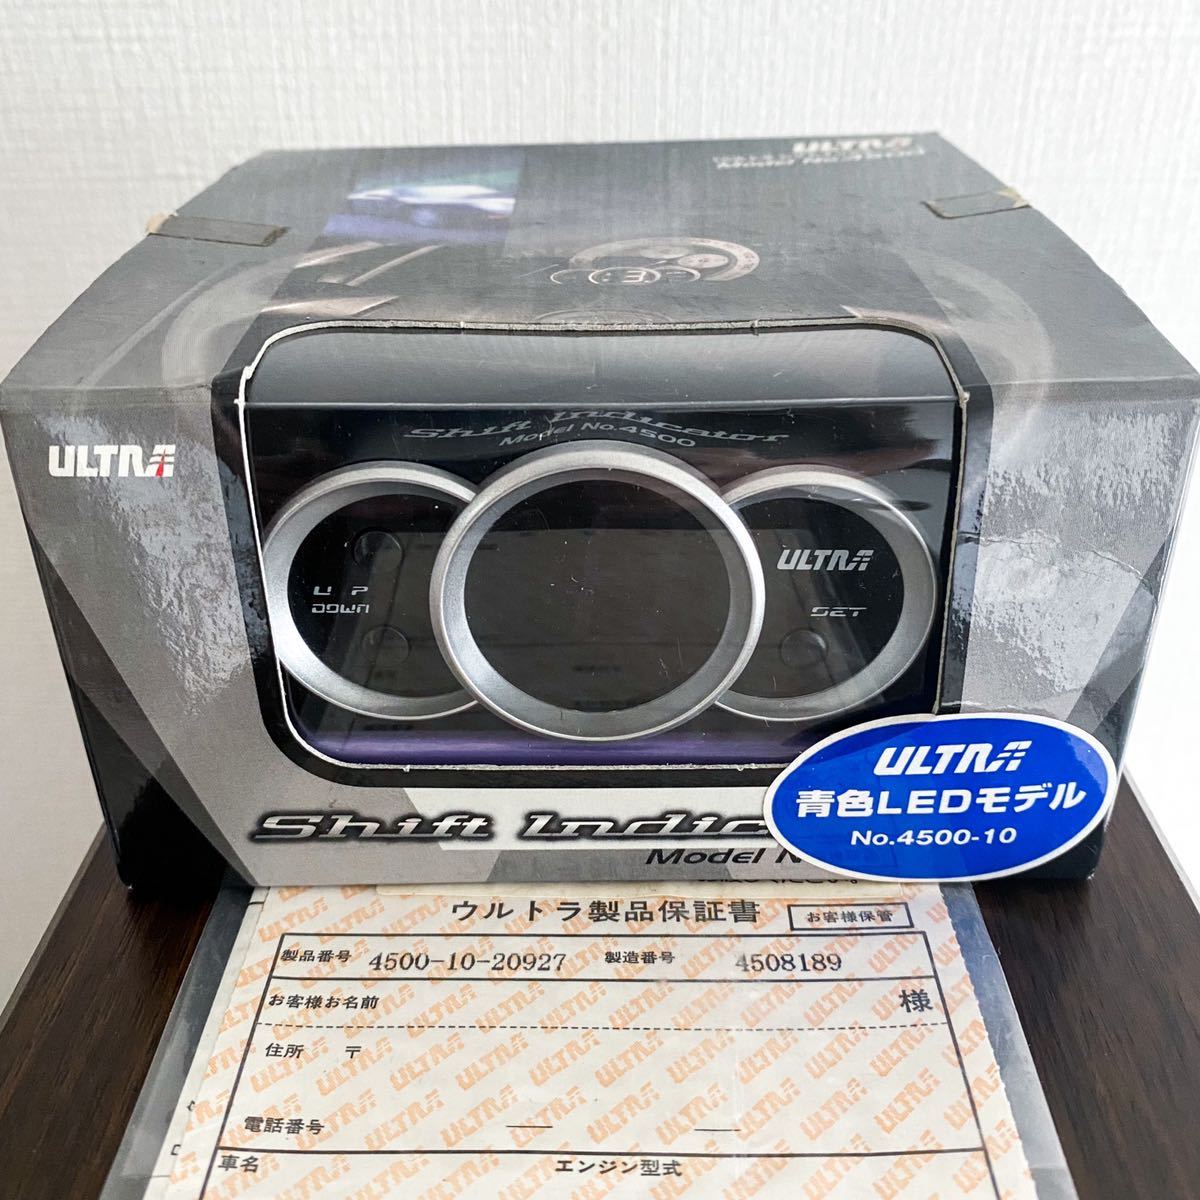 永井電子 ウルトラ シフトインジケーター レッド no.4500 ultra www